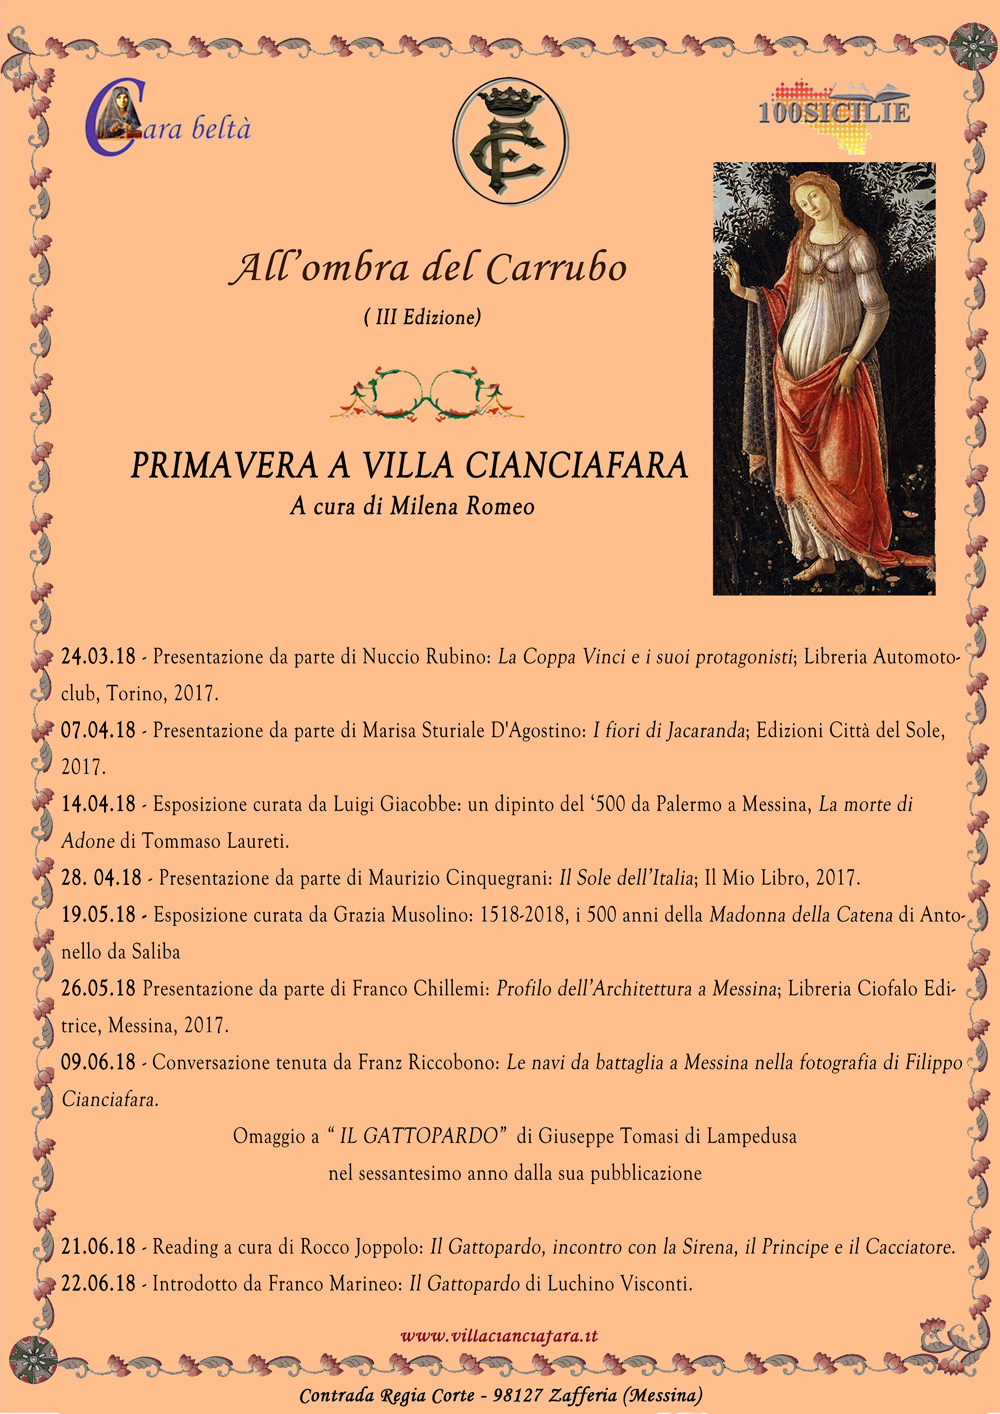 All'Ombra del Carrubo III^ Edizione - Marzo - Giugno 2018